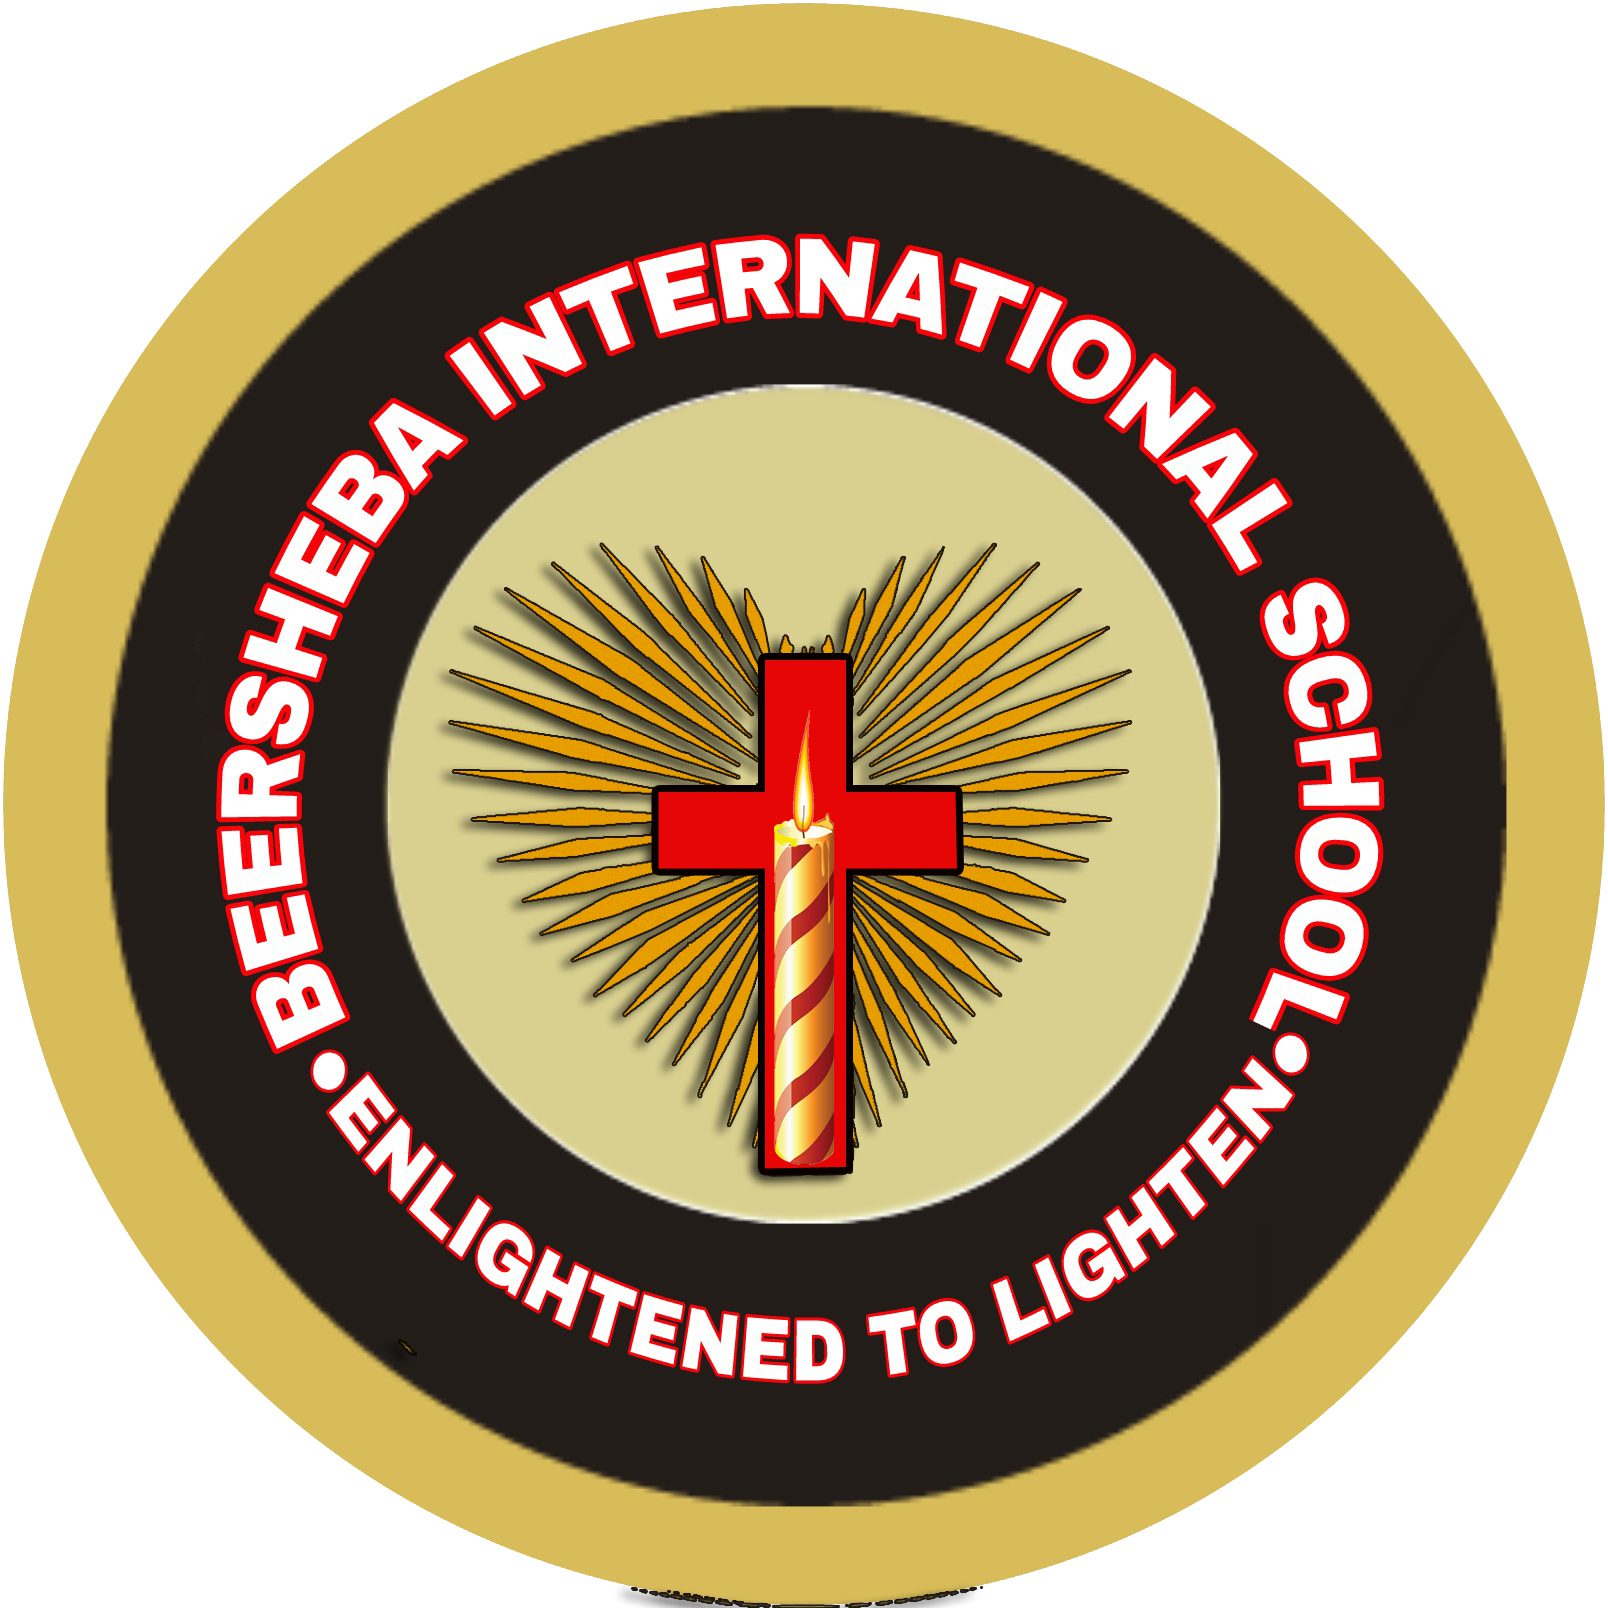 BEERSHEBA INTERNATIONAL SCHOOL